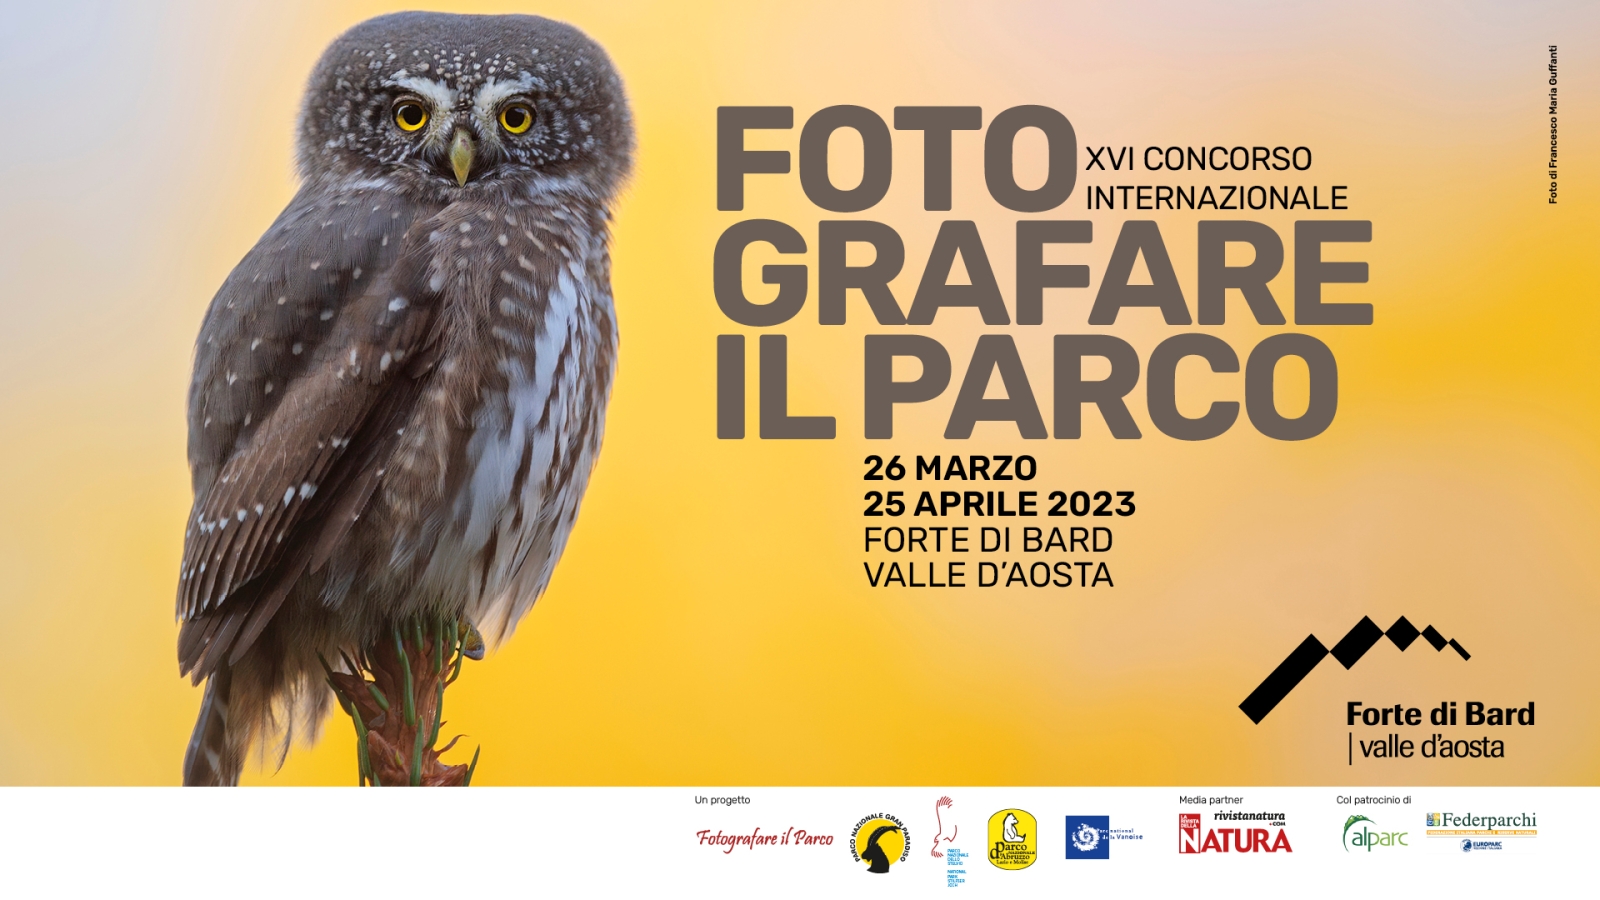 International photo contest “Fotografare Il Parco” - 16th edition